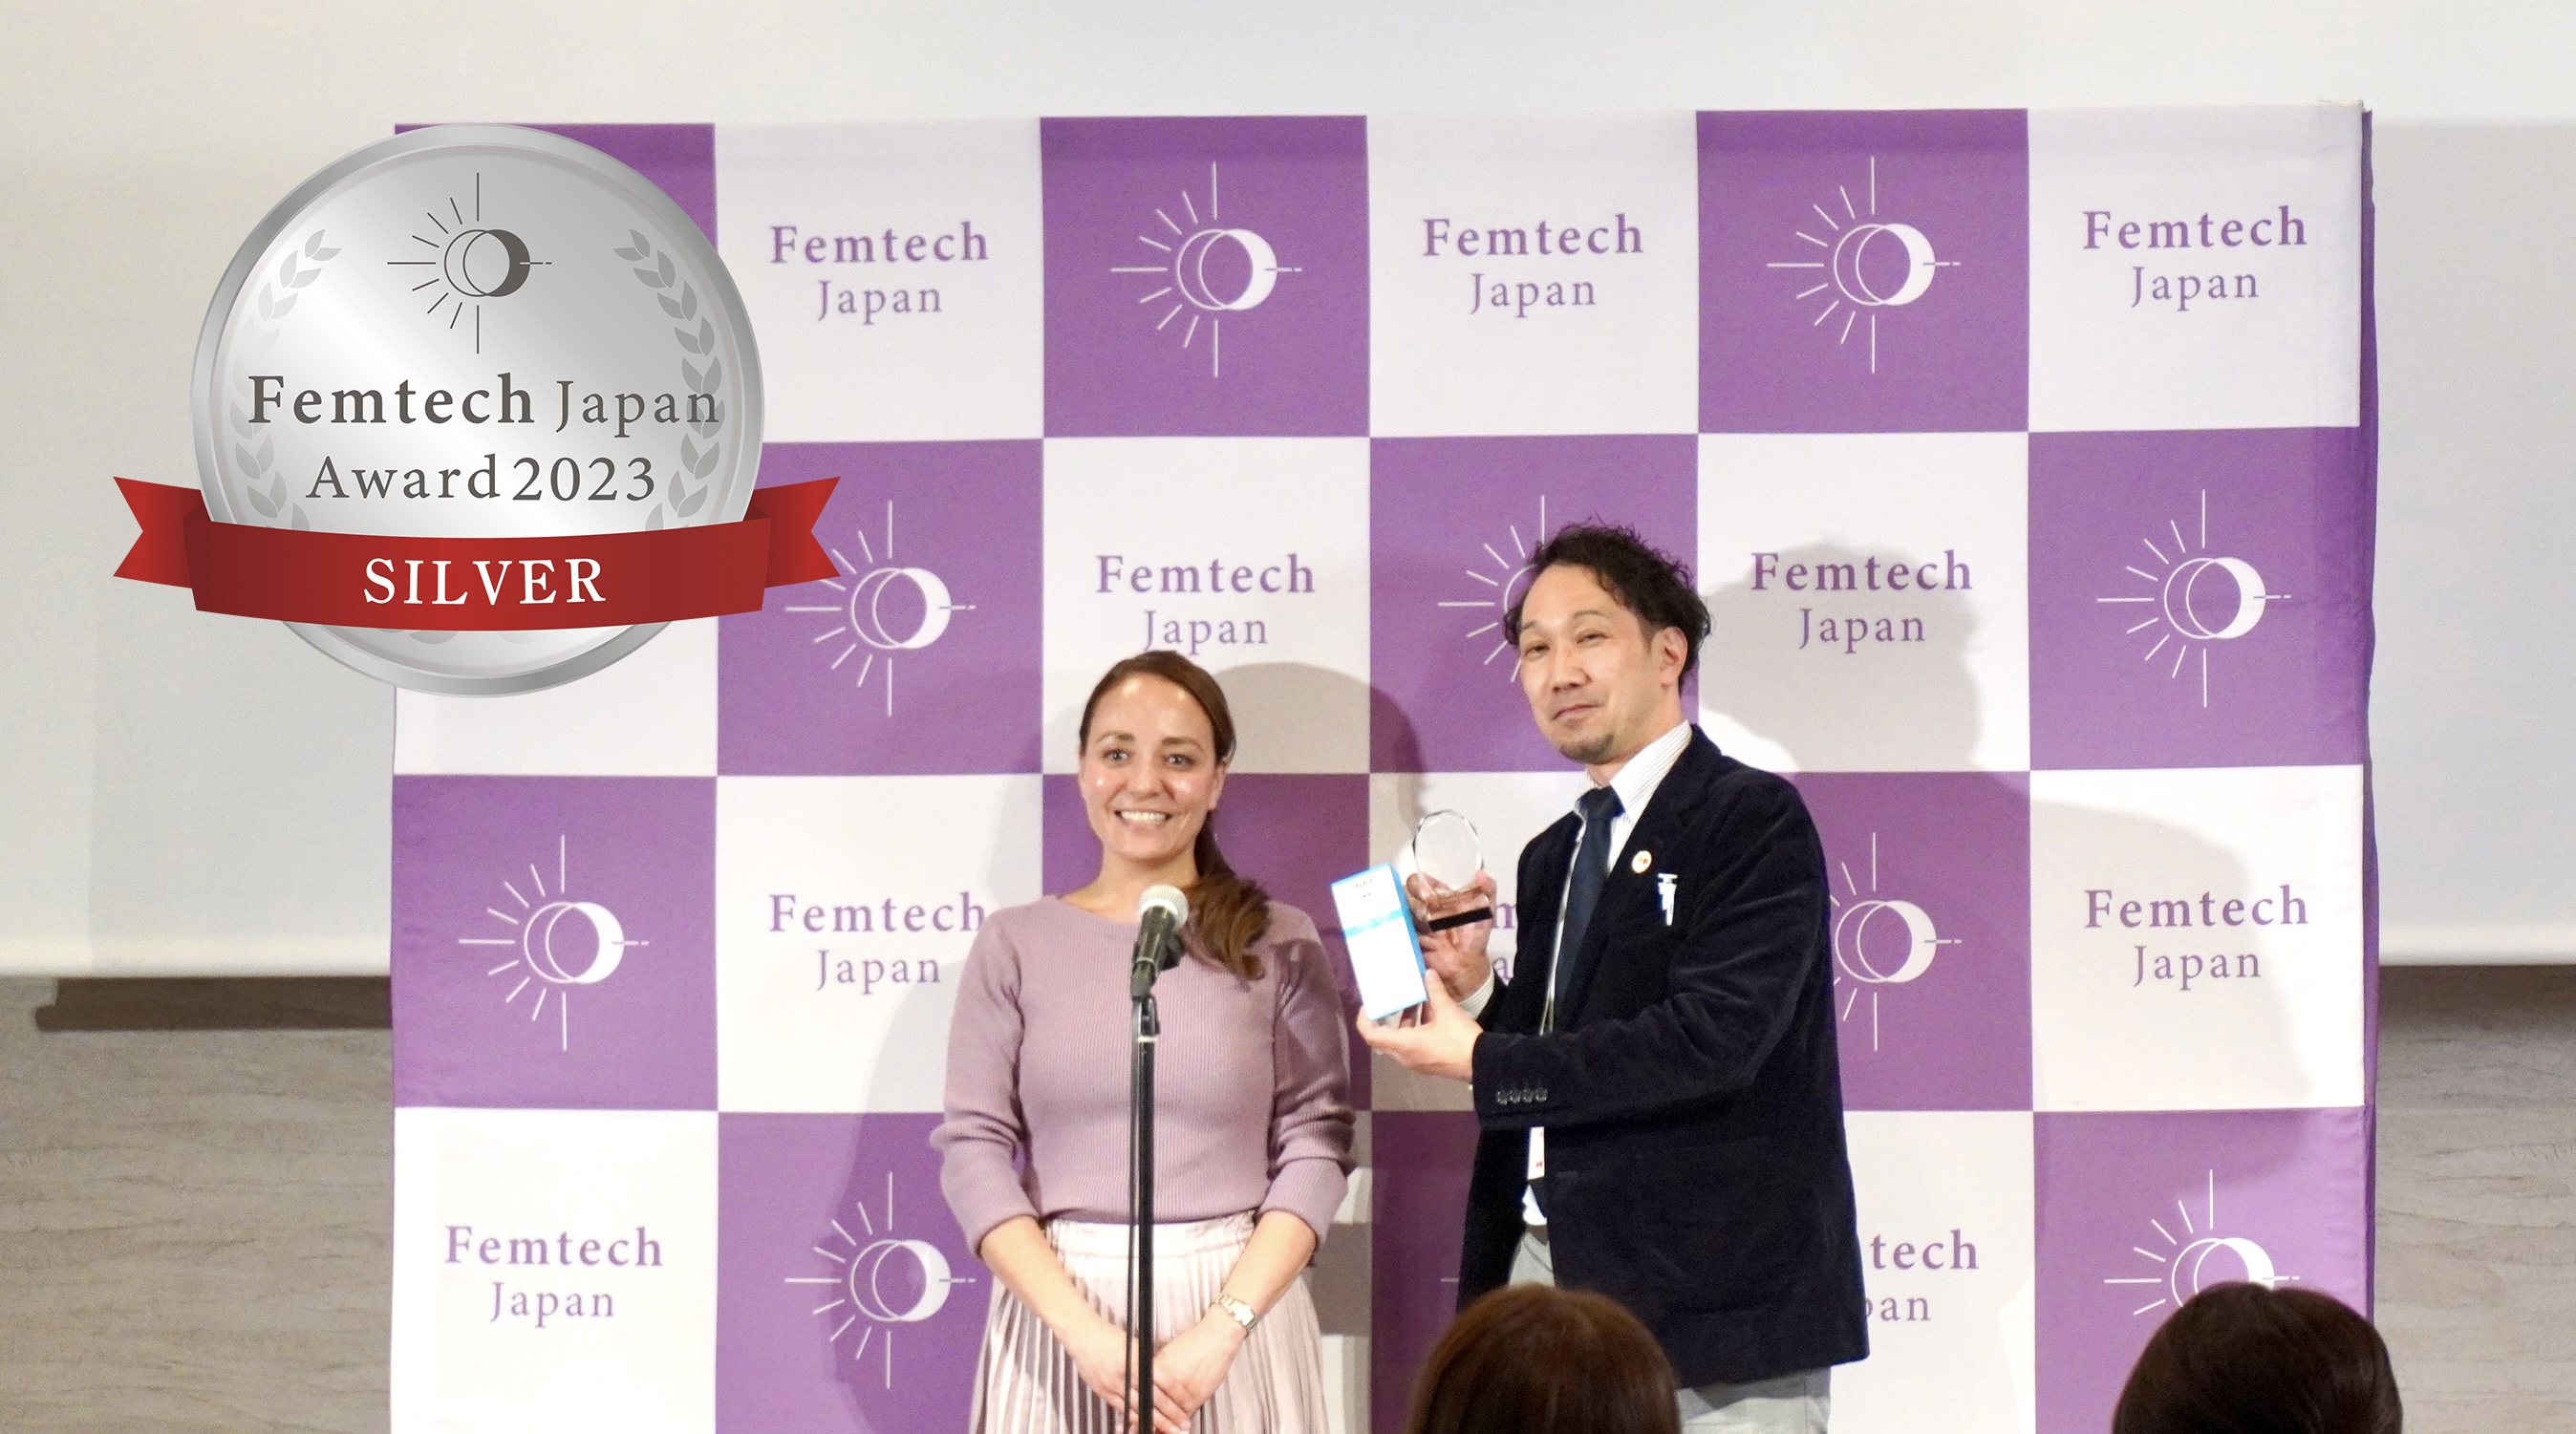 INAX シャワートイレ ビデ専用ノズルが 「Femtech Japan Award 2023」において「SILVER（銀賞）」を受賞 サムネイル画像